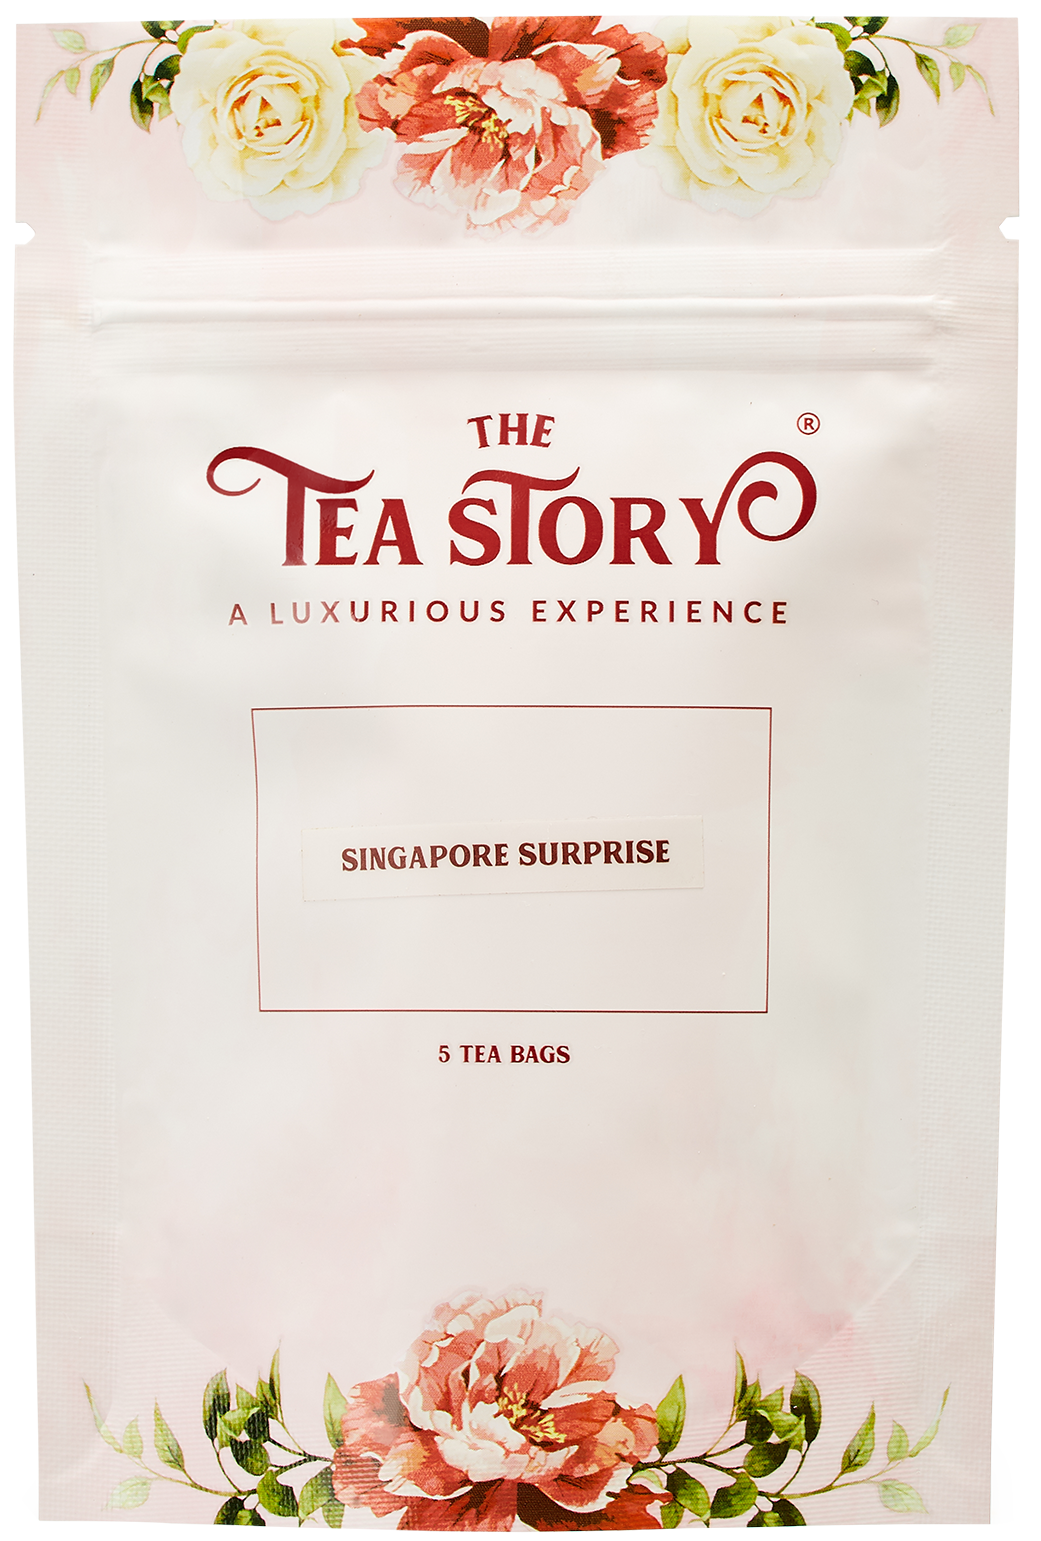 Singapore Surprise Tea Pouch